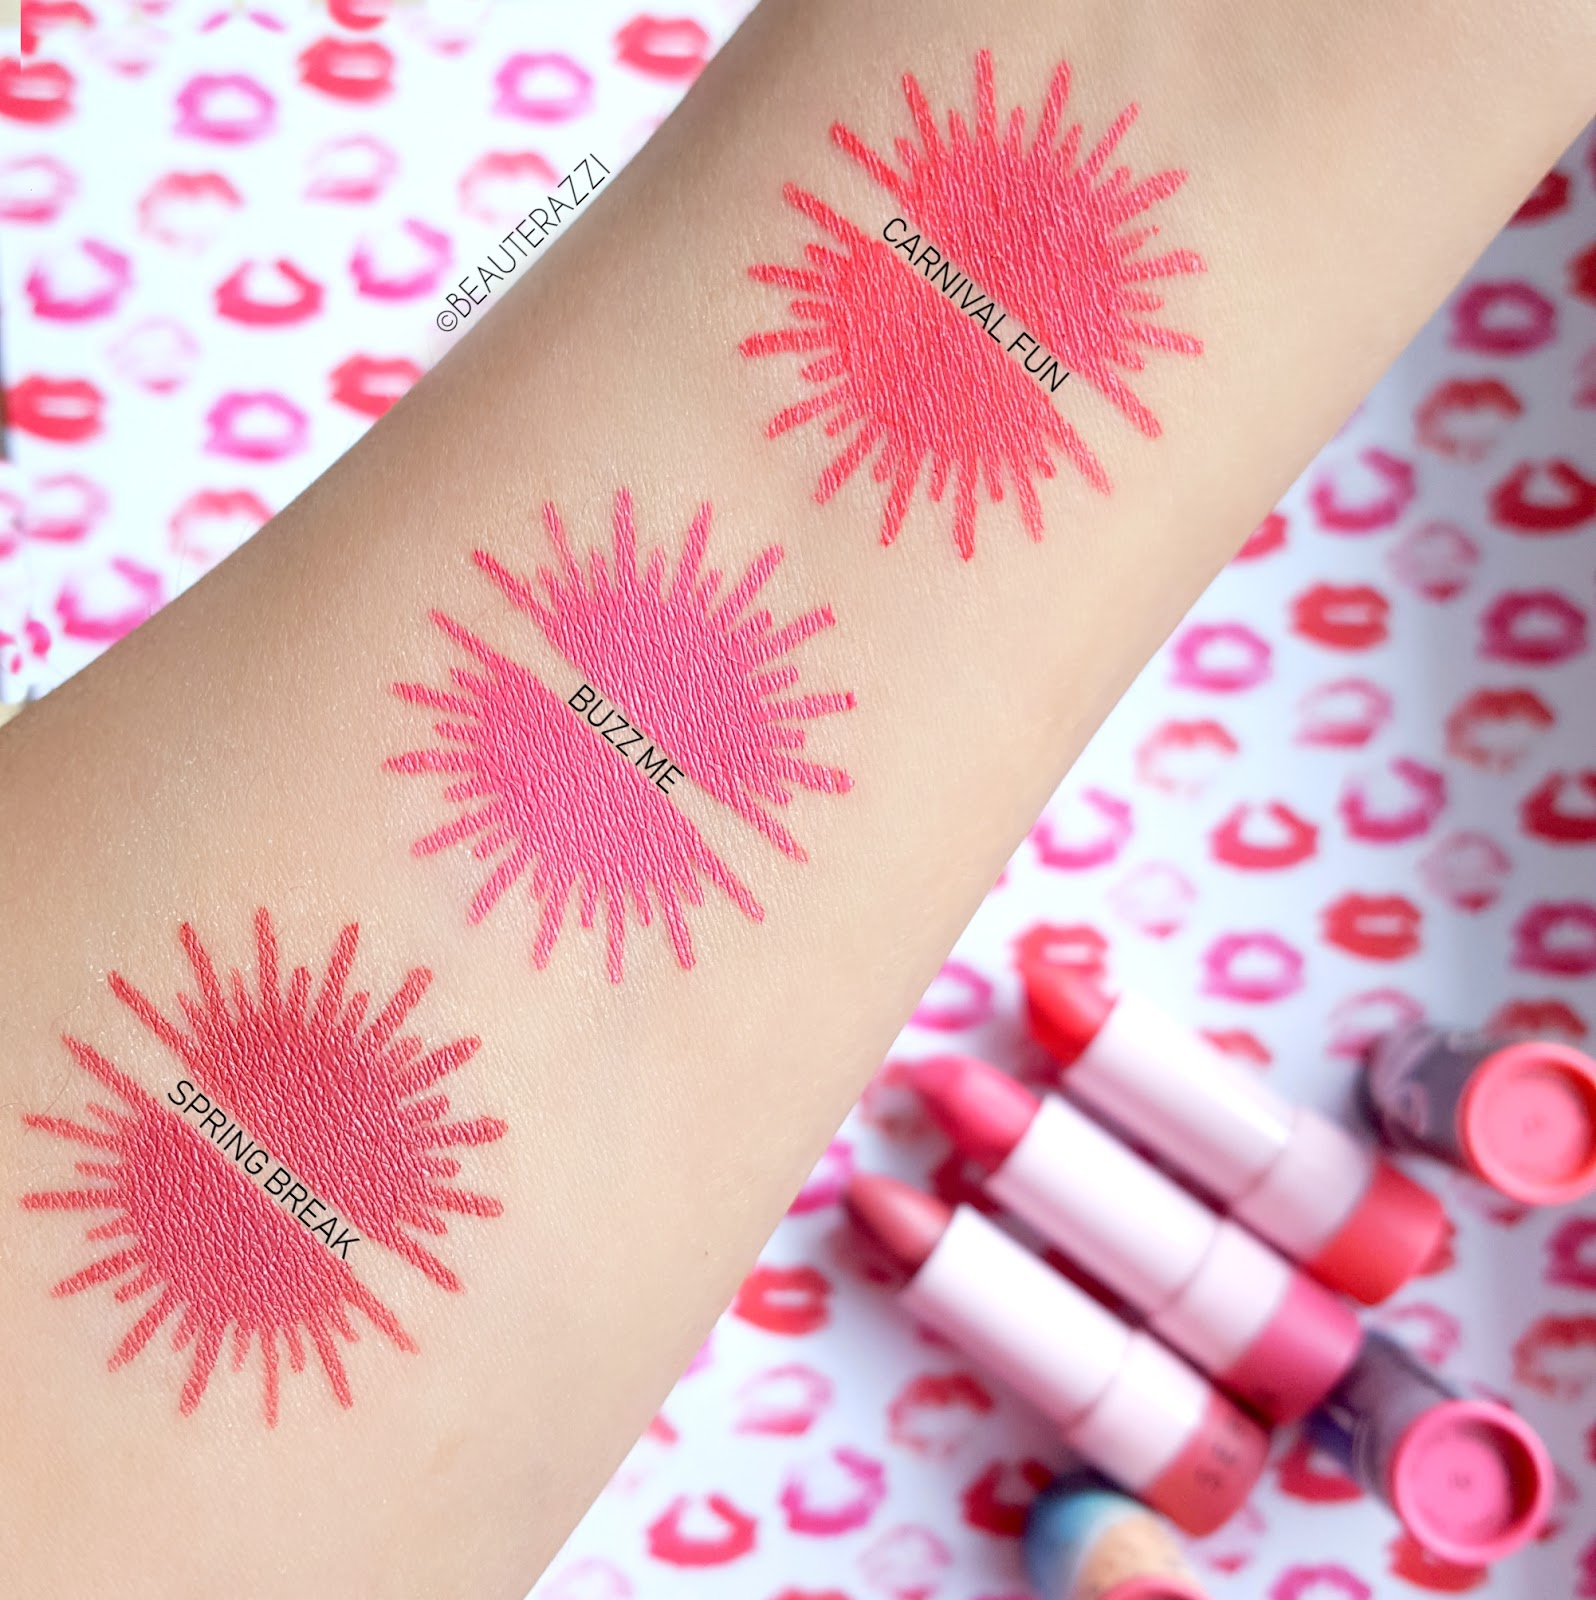 Sephora #Lipstories Lipsticks - swatches